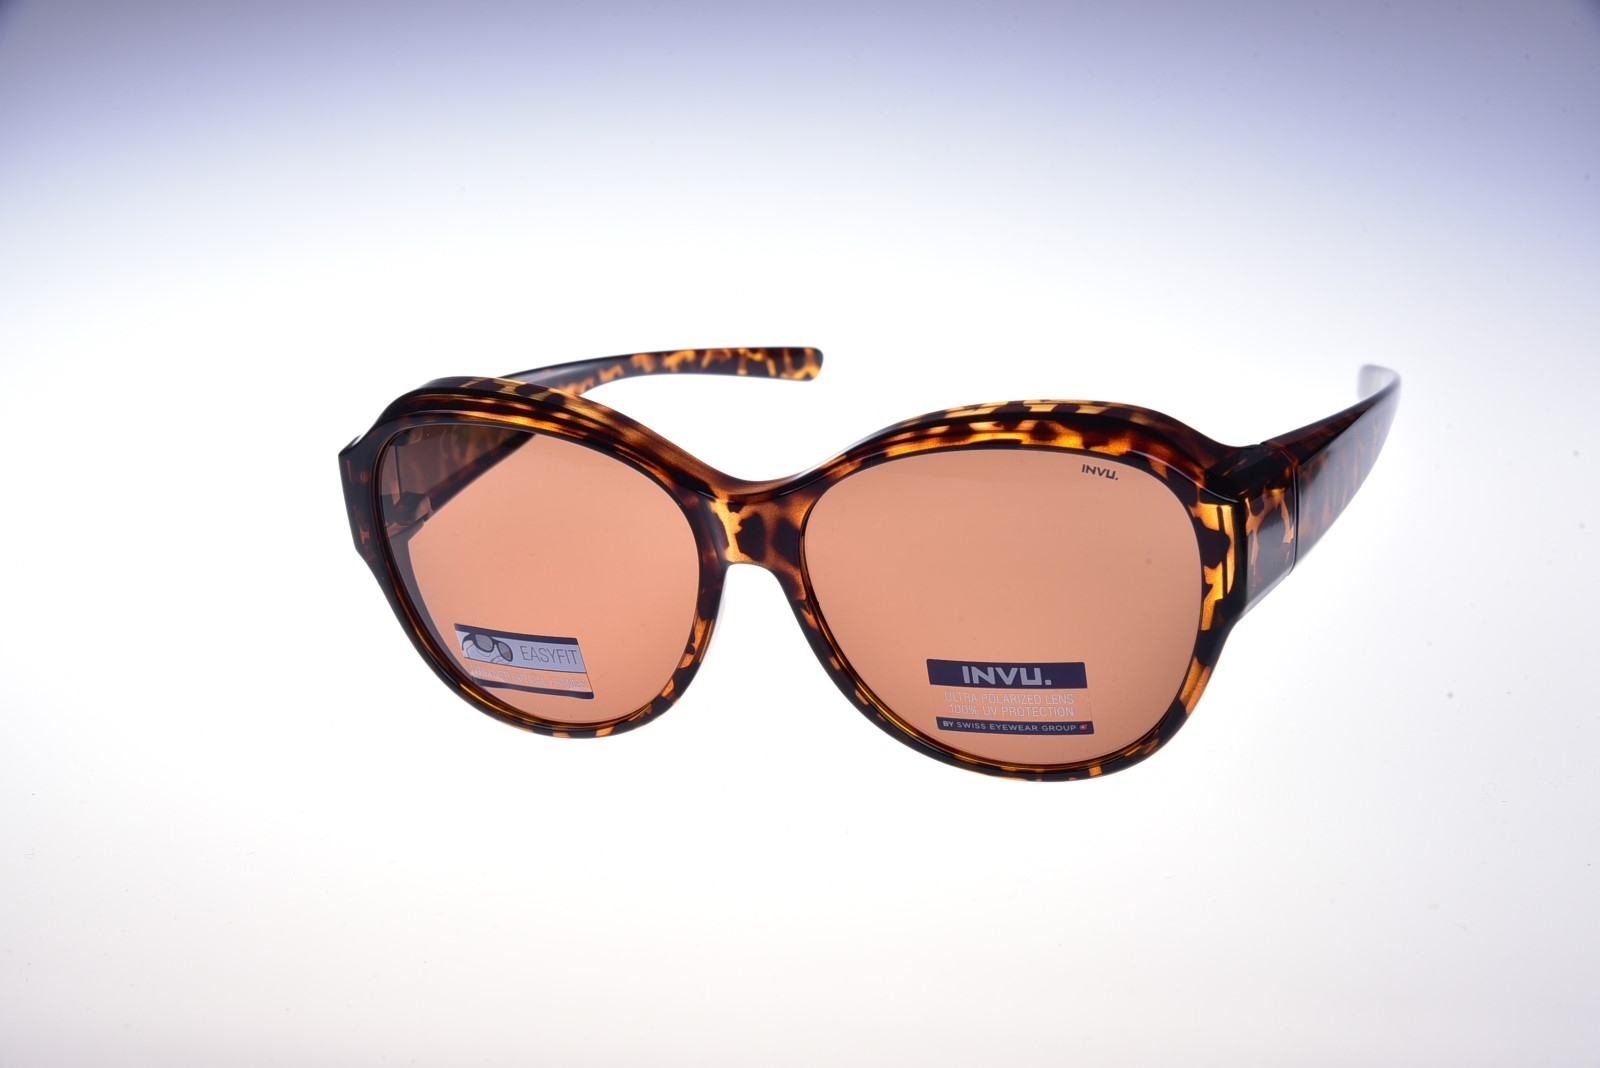 INVU. Easyfit E2100B - Pánske slnečné okuliare